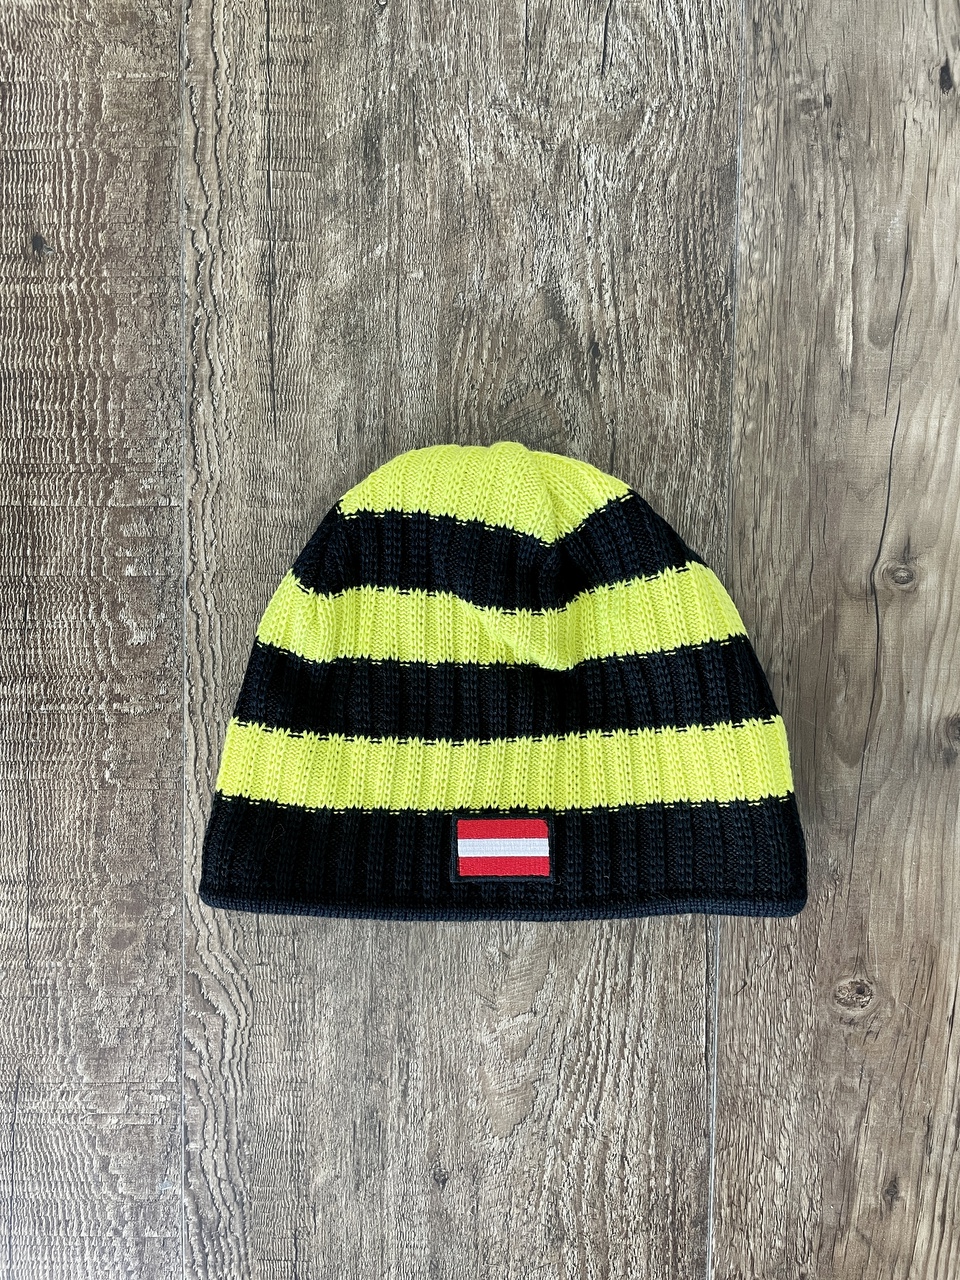 Fischer Hat - Country - Austria - black/yellow